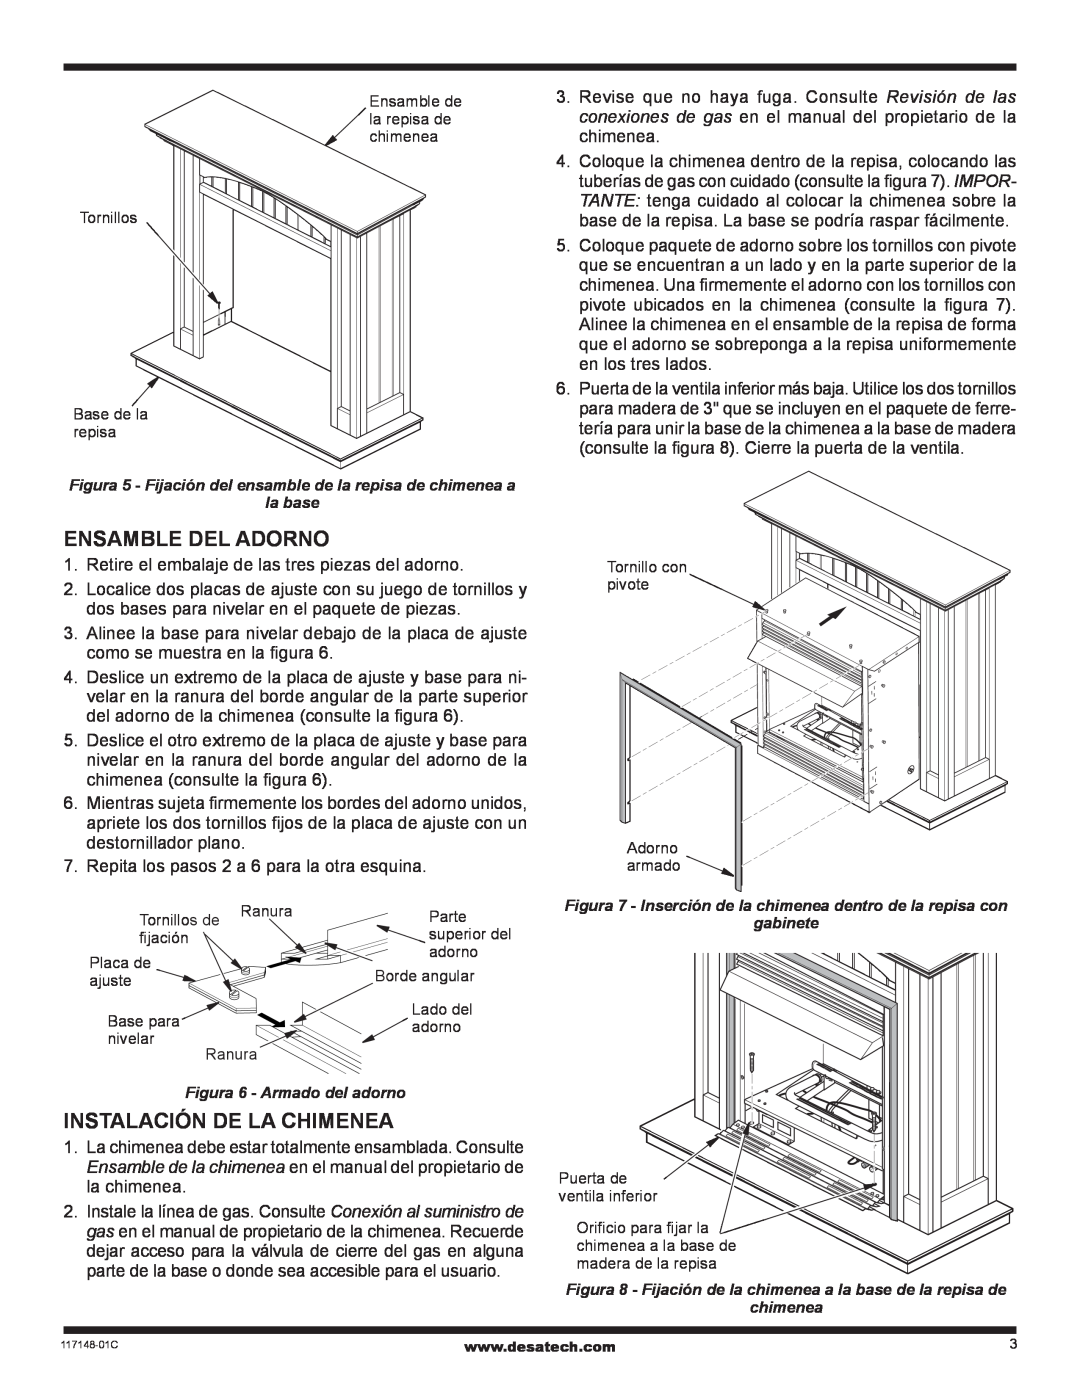 Desa WD26CP installation instructions Ensamble del adorno, Instalación de la chimenea 